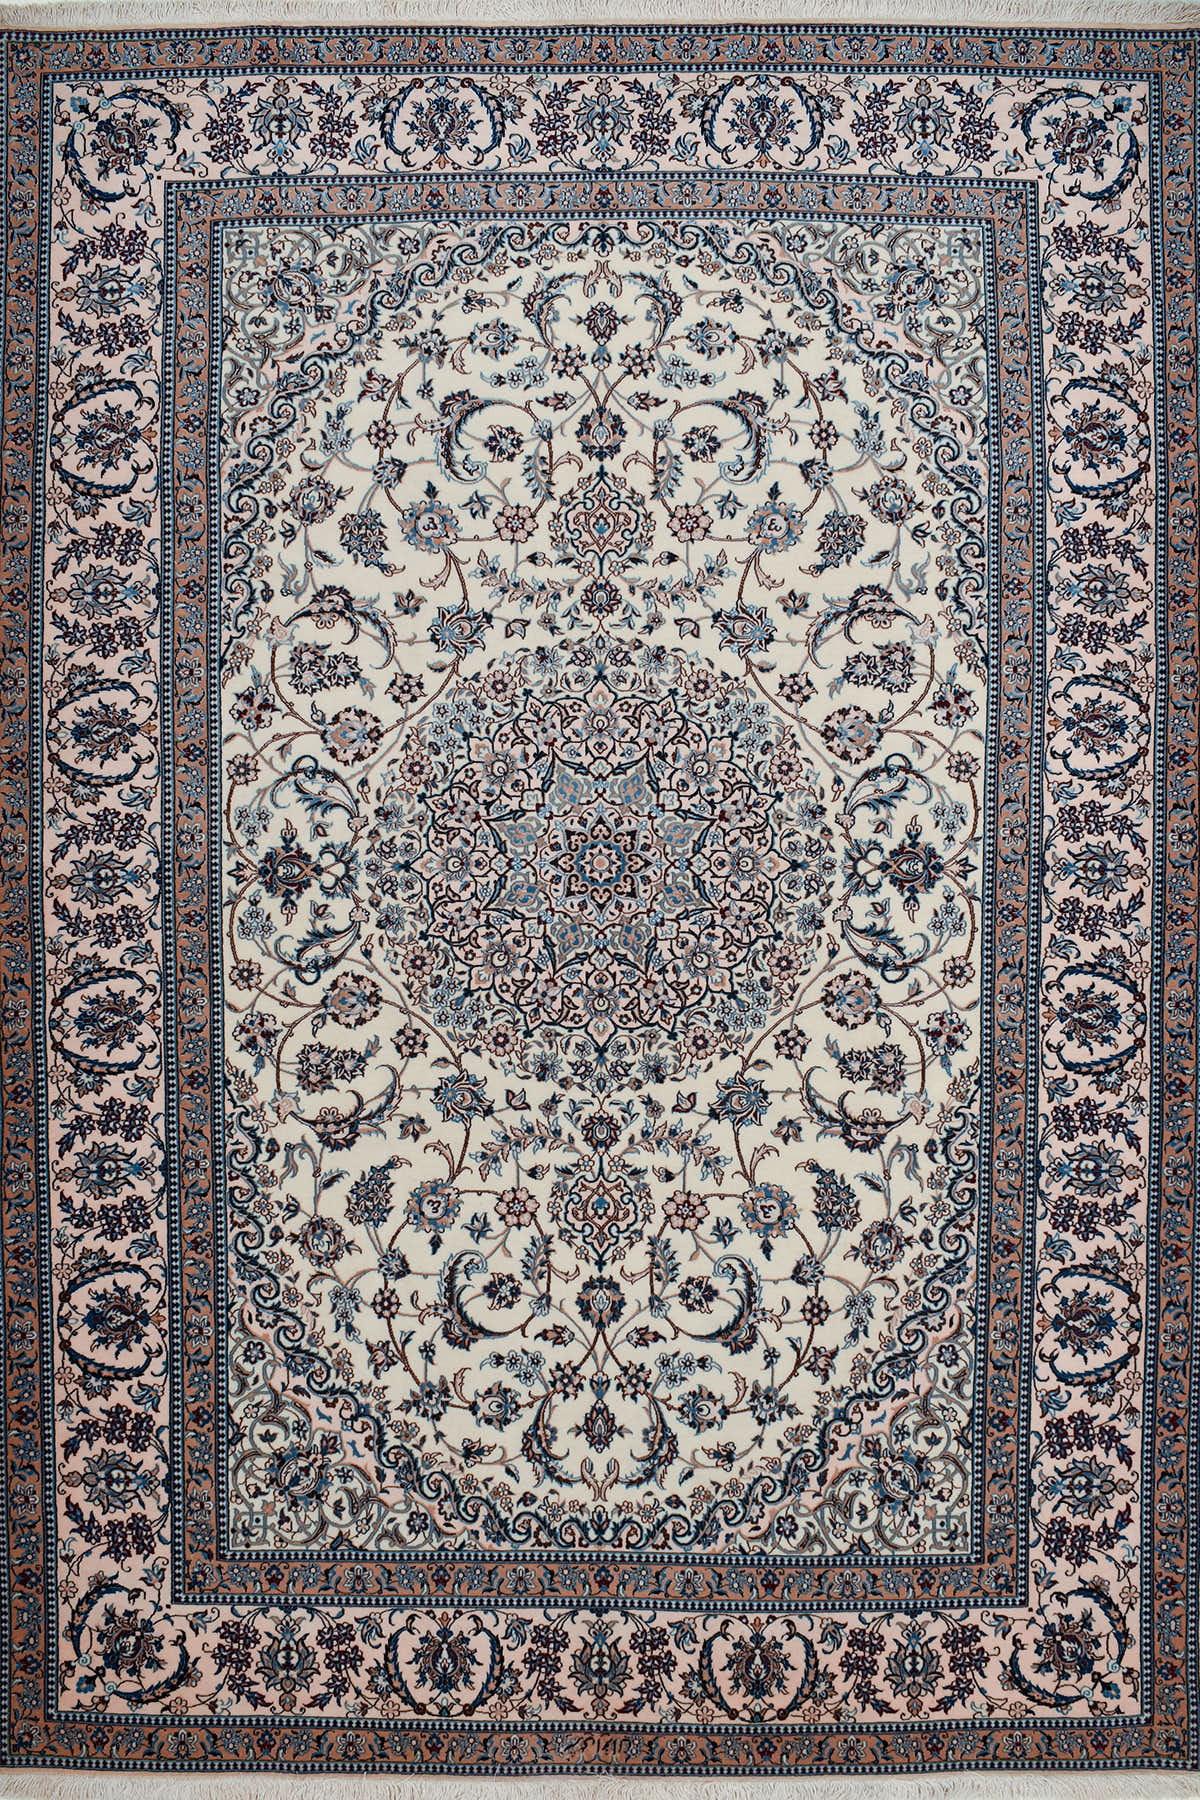 שטיח נעין שישלה 01 | שטיח פרסי